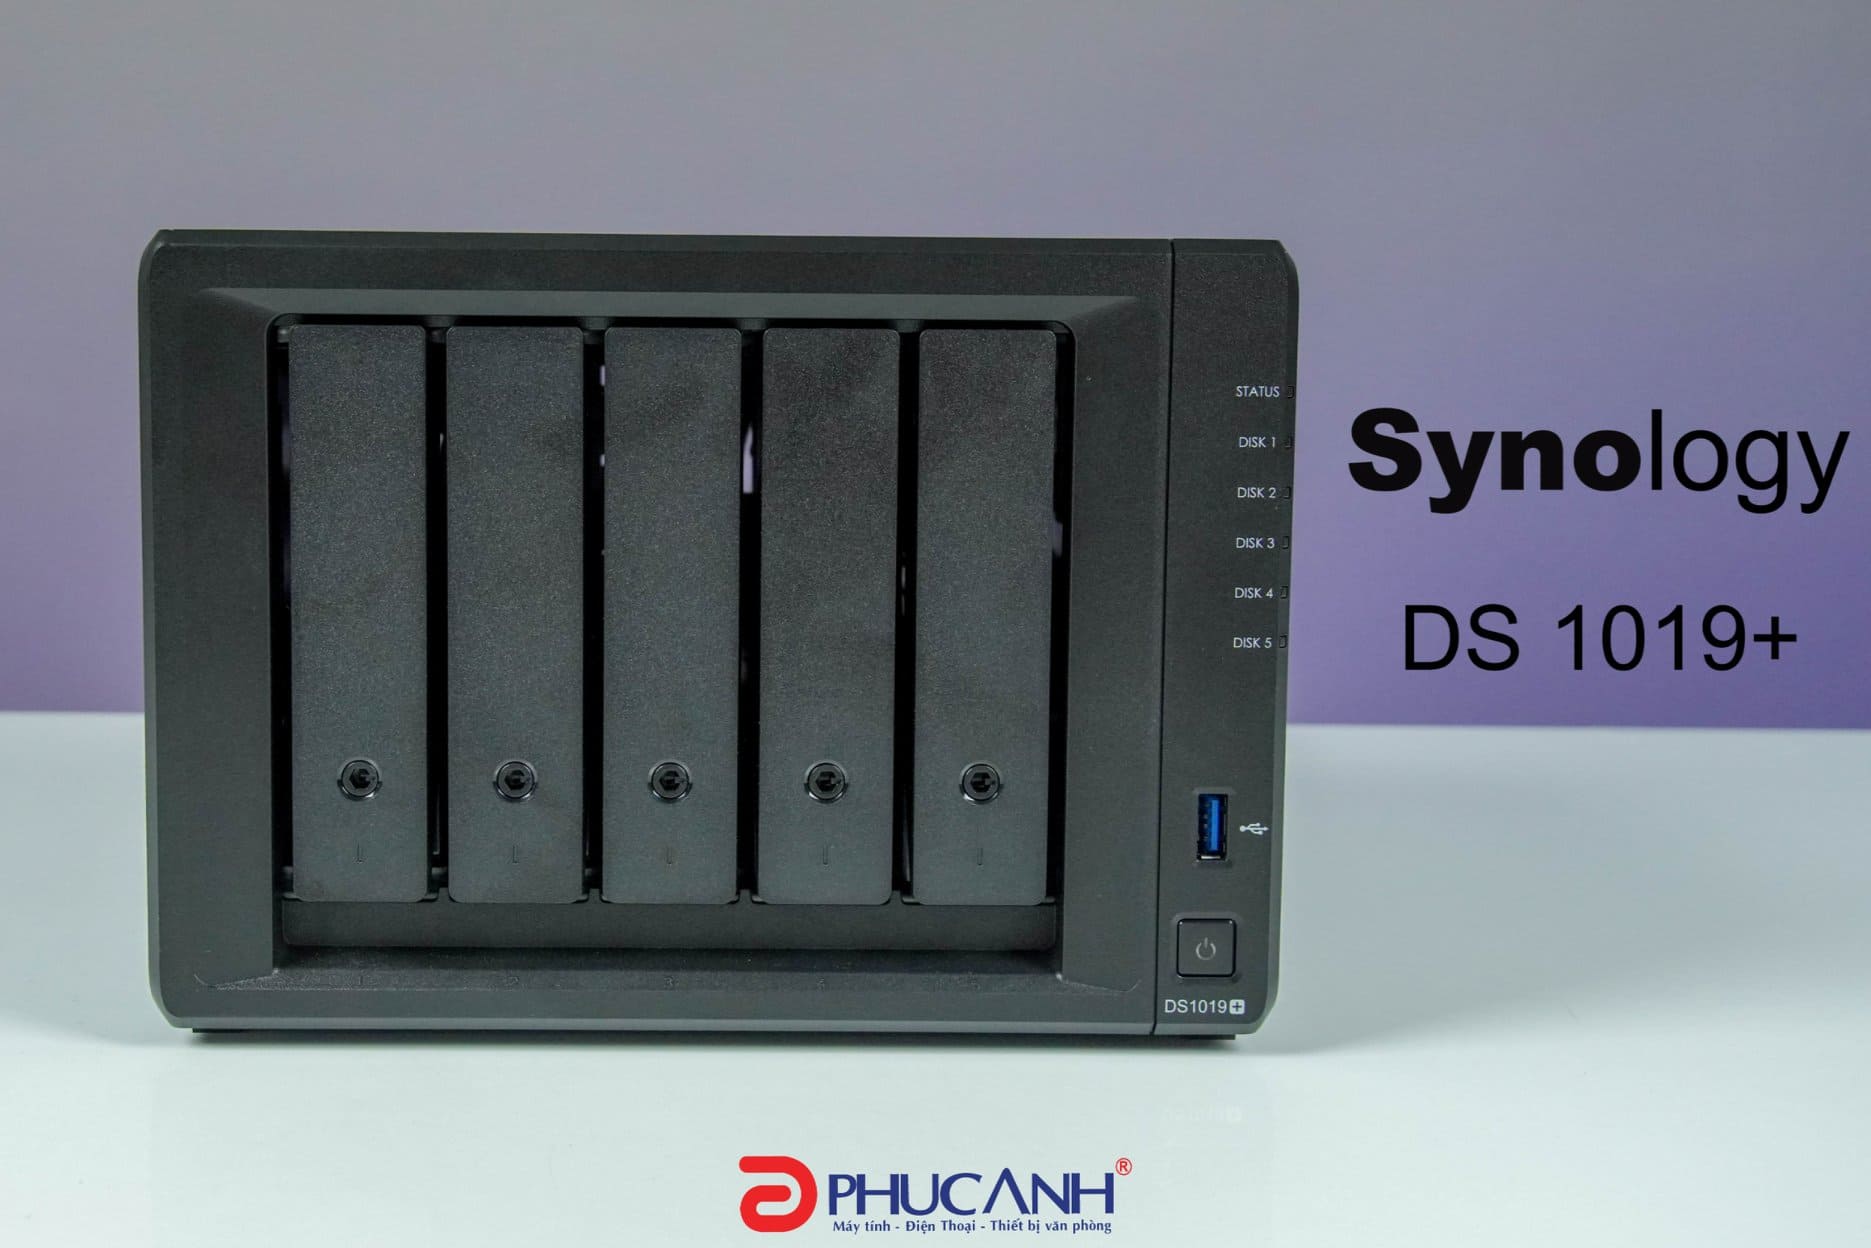 [UNBOX] Synology DS1019+ lựa chọn lý tưởng cho người dùng cần hiệu suất và khả năng mở rộng lưu trữ lâu dài